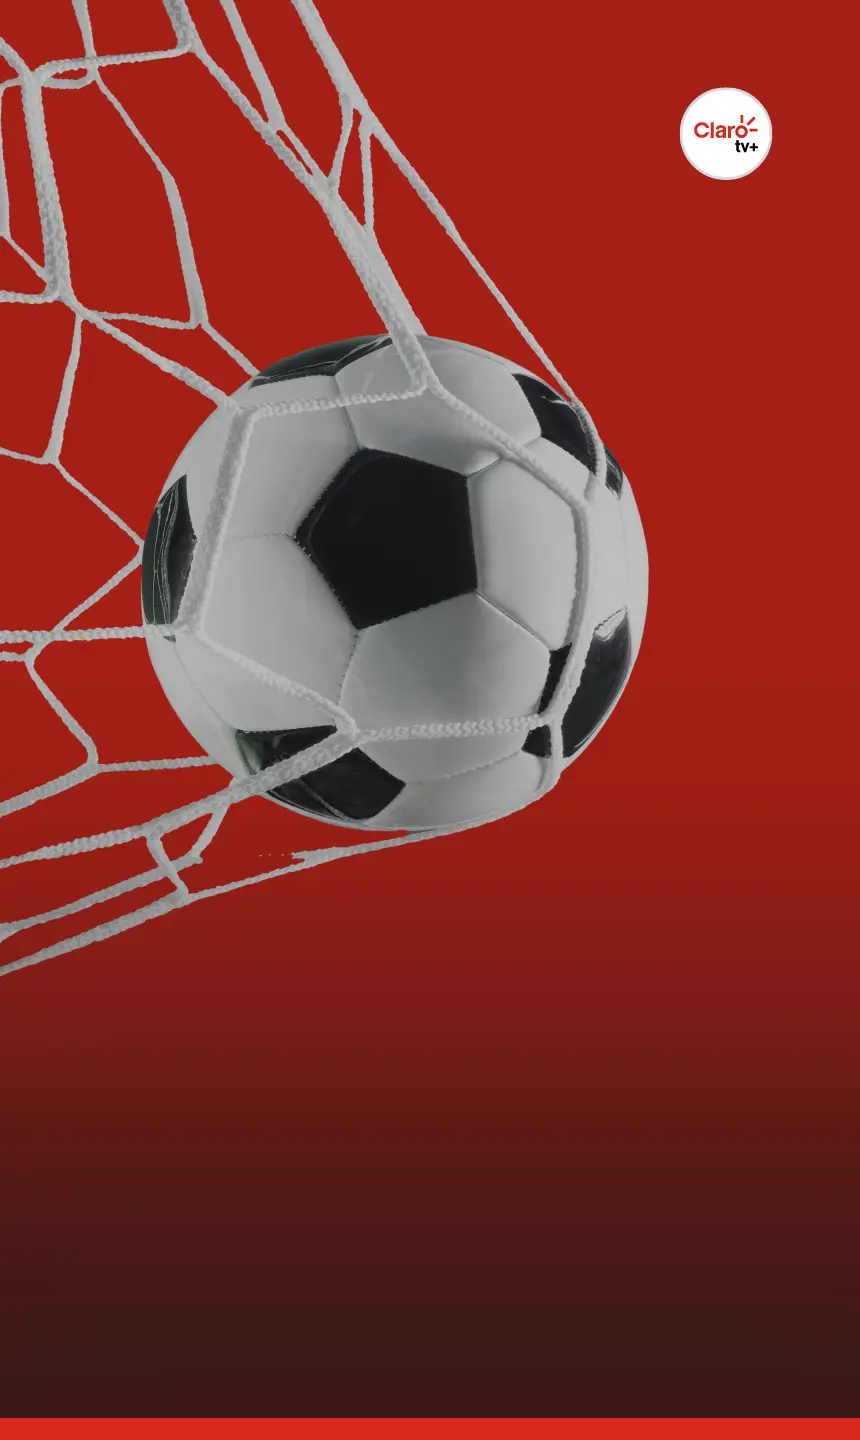 Assistir futebol ao vivo Online: Assista jogo pela internet hoje